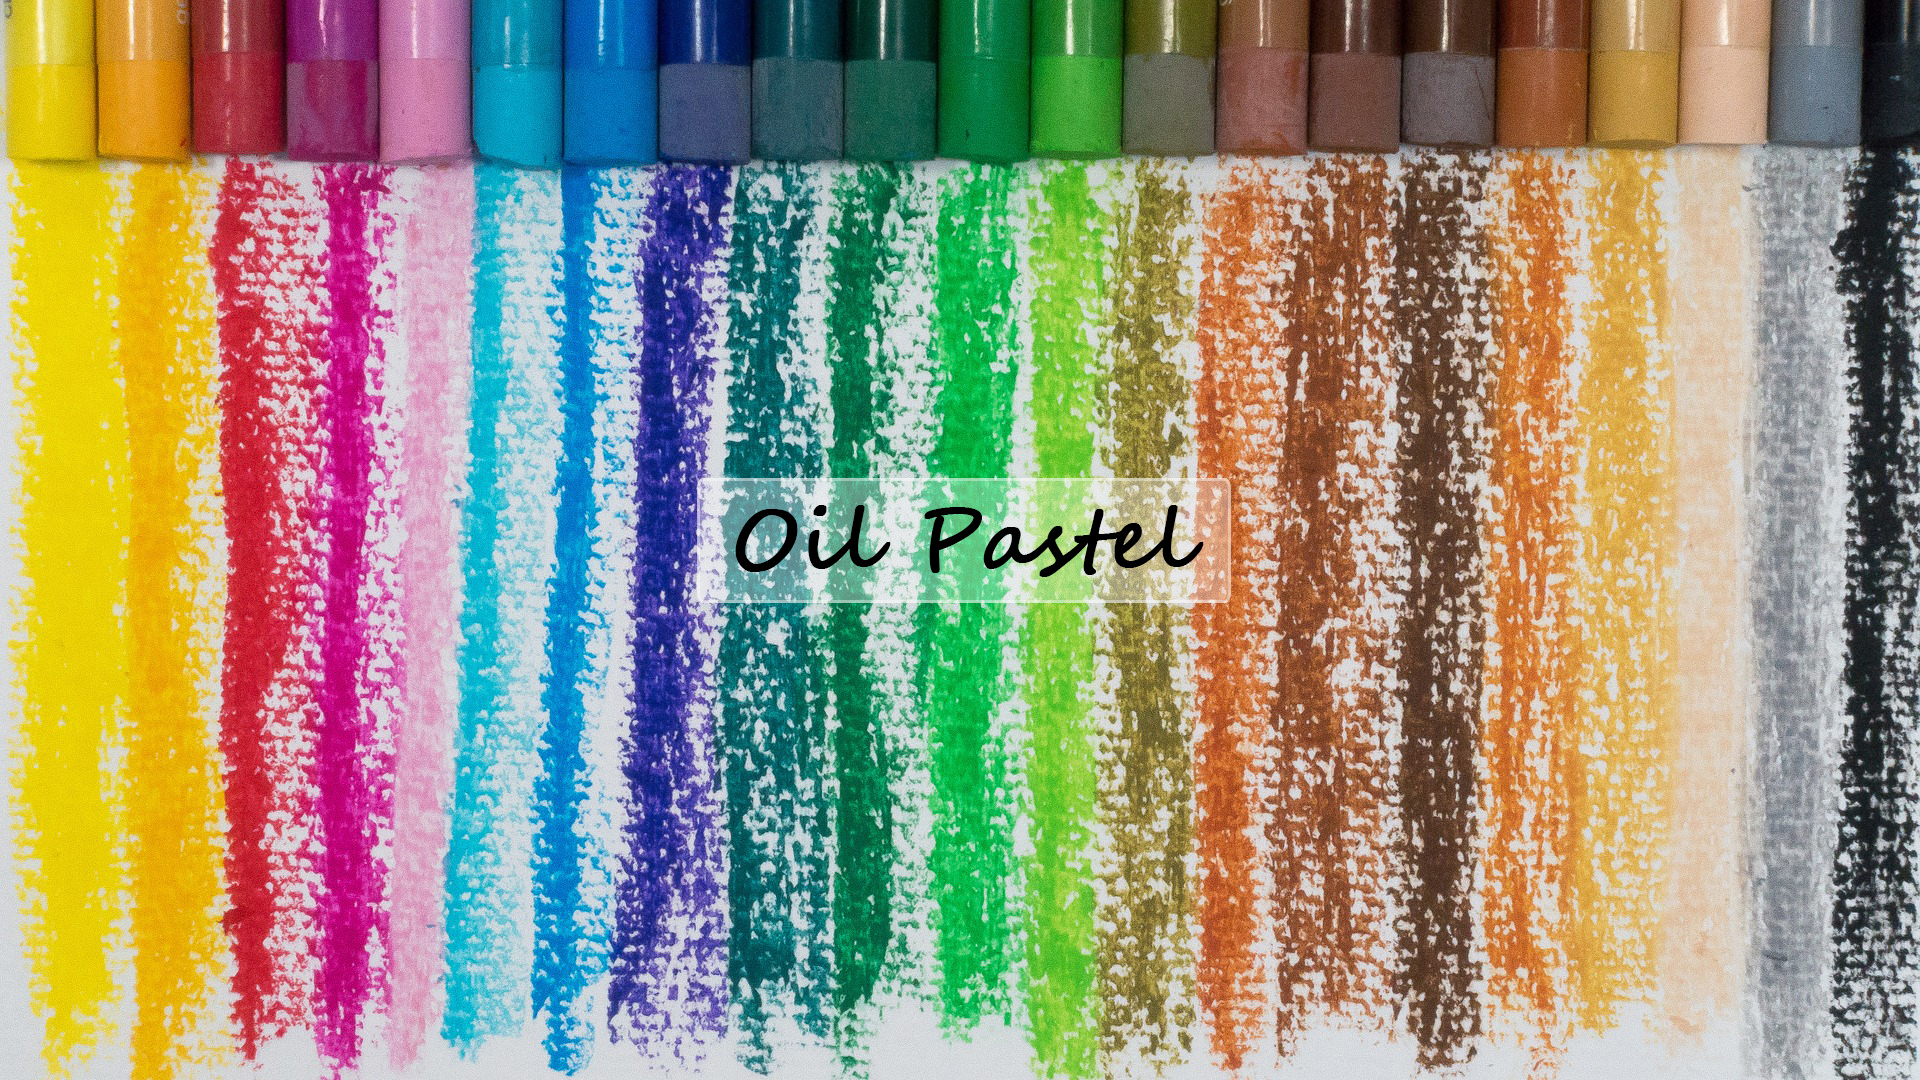 Oil pastel vs crayon